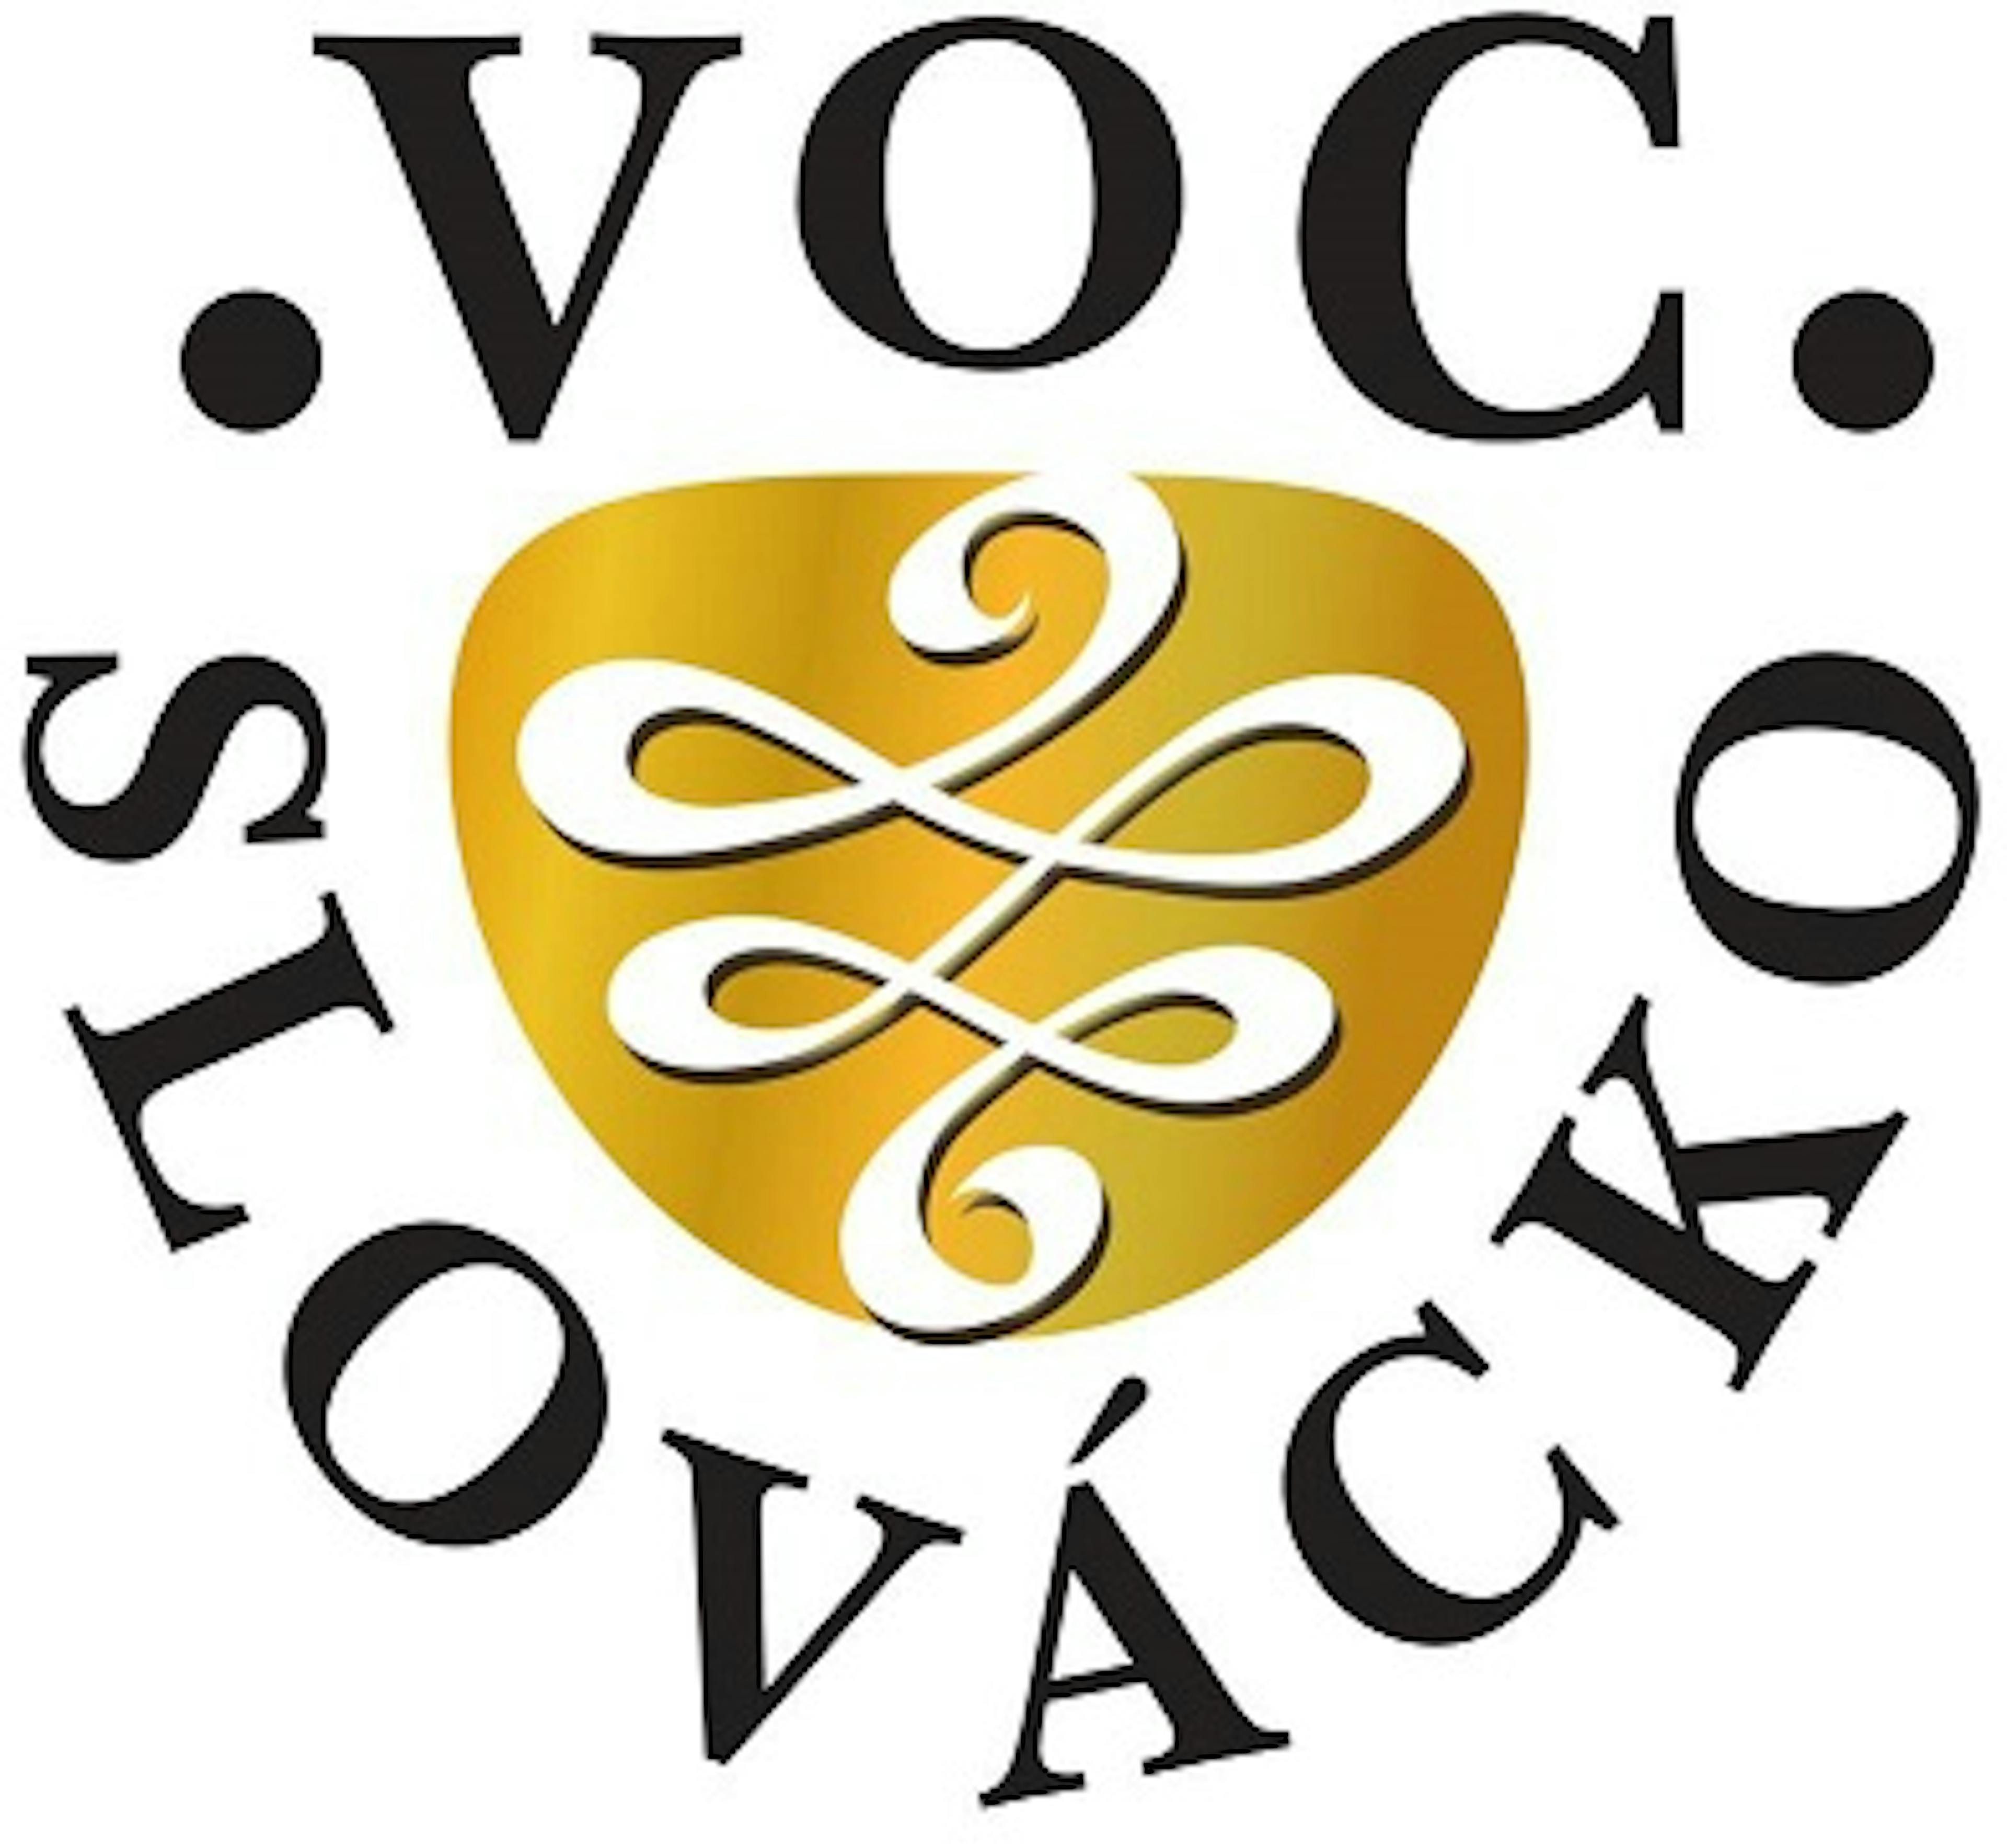 VOC slovácko